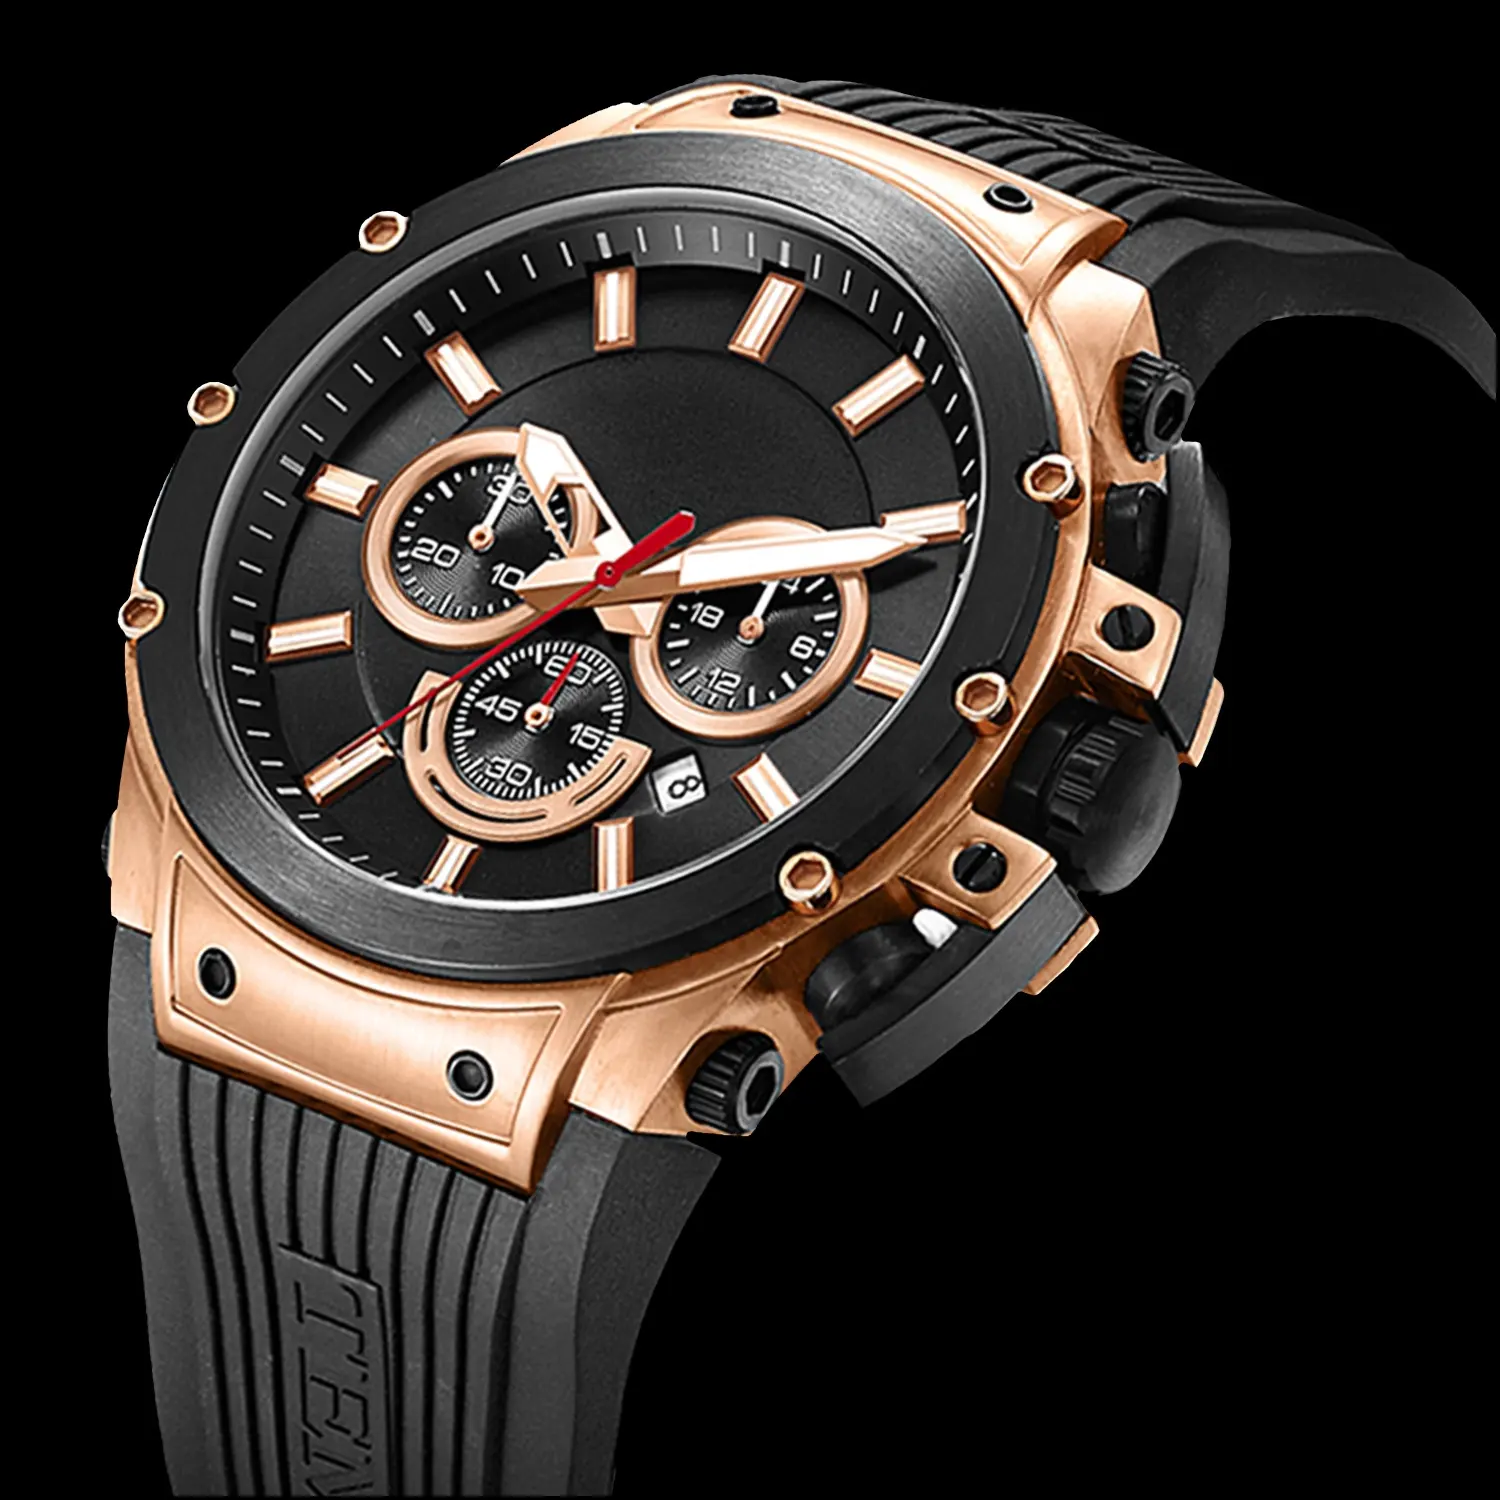 นาฬิกาควอทซ์หน้าปัดใหญ่สำหรับผู้ชาย,นาฬิกาสเตนเลส Orologio Uomo OEM หน้าปัดใหญ่นาฬิกาแบบกำหนดเองผลิตในประเทศจีน